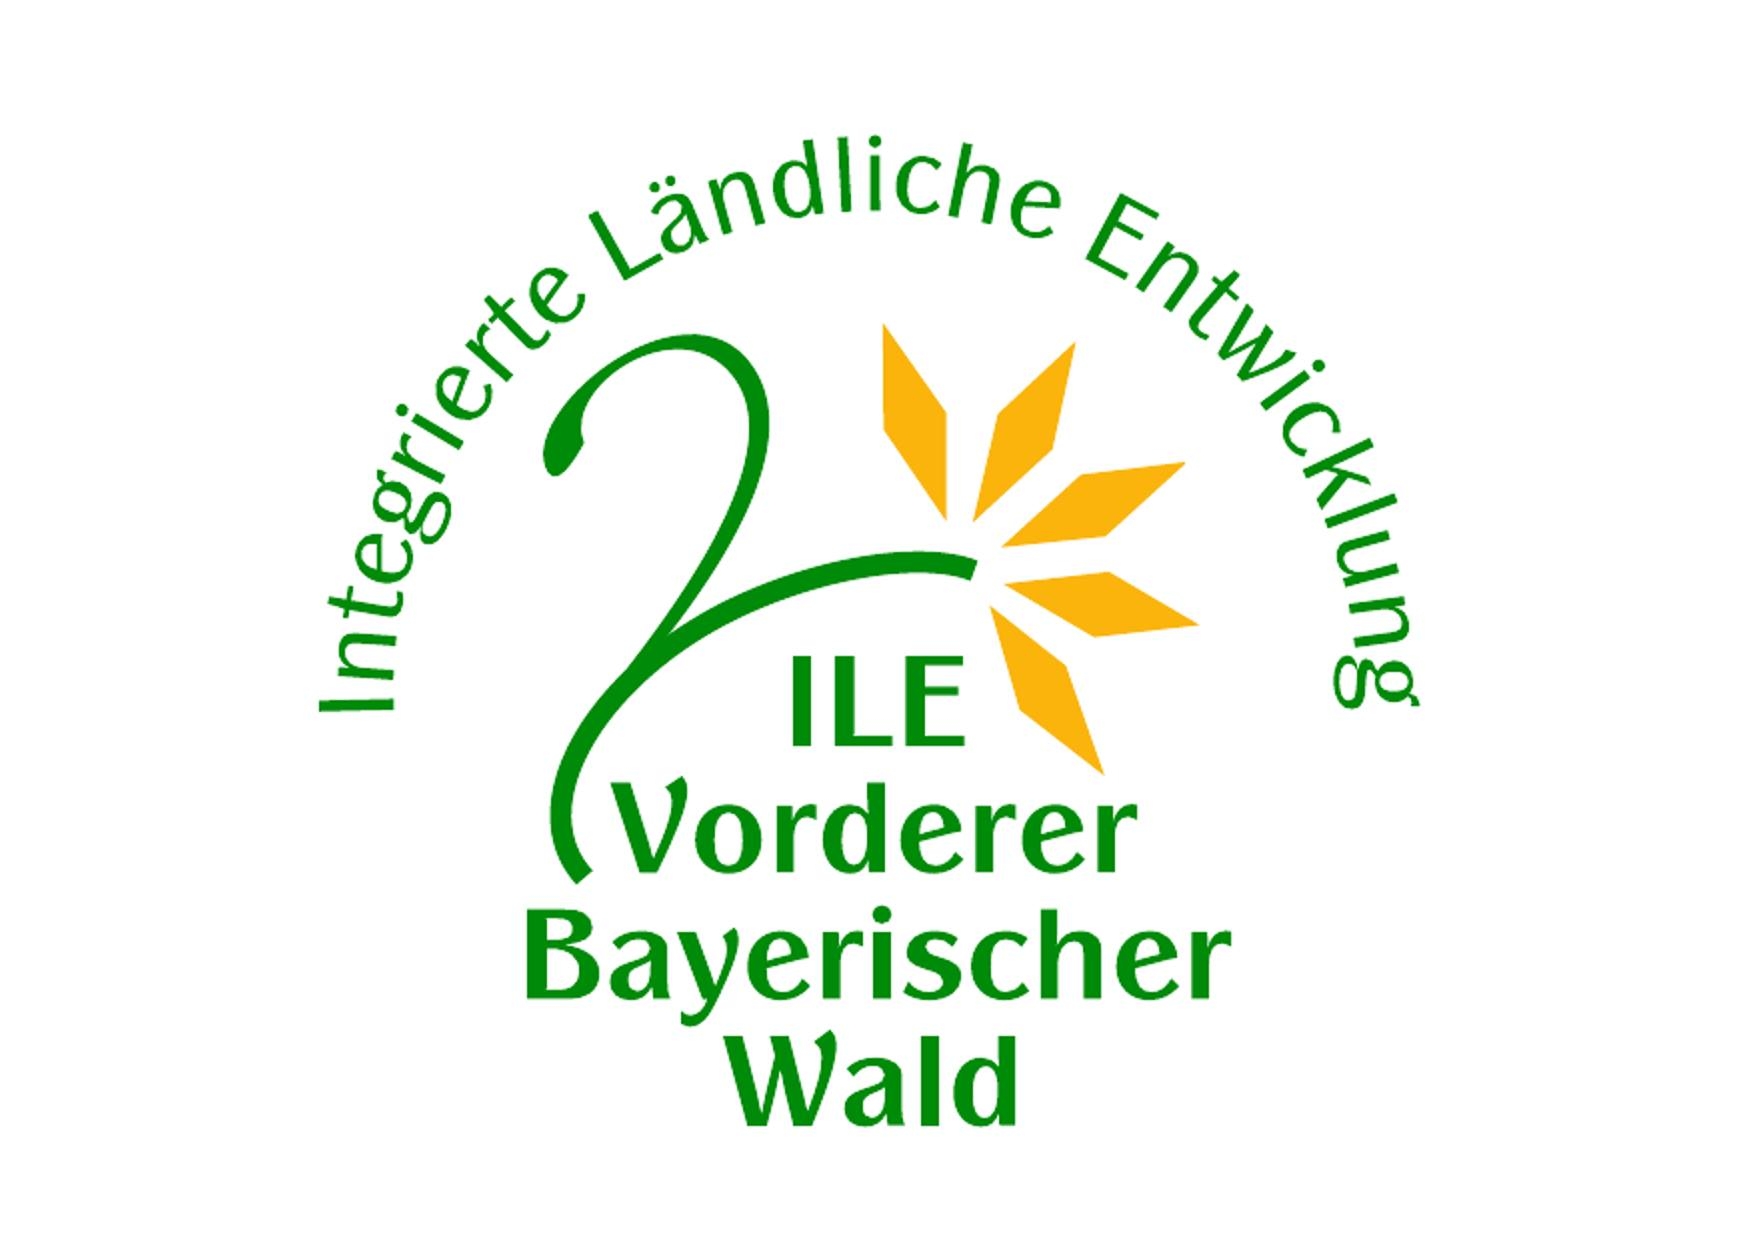  ILE Vorderer Bayerischer Wald fördert eine Reihe von Projekten mit 100 000 Euro